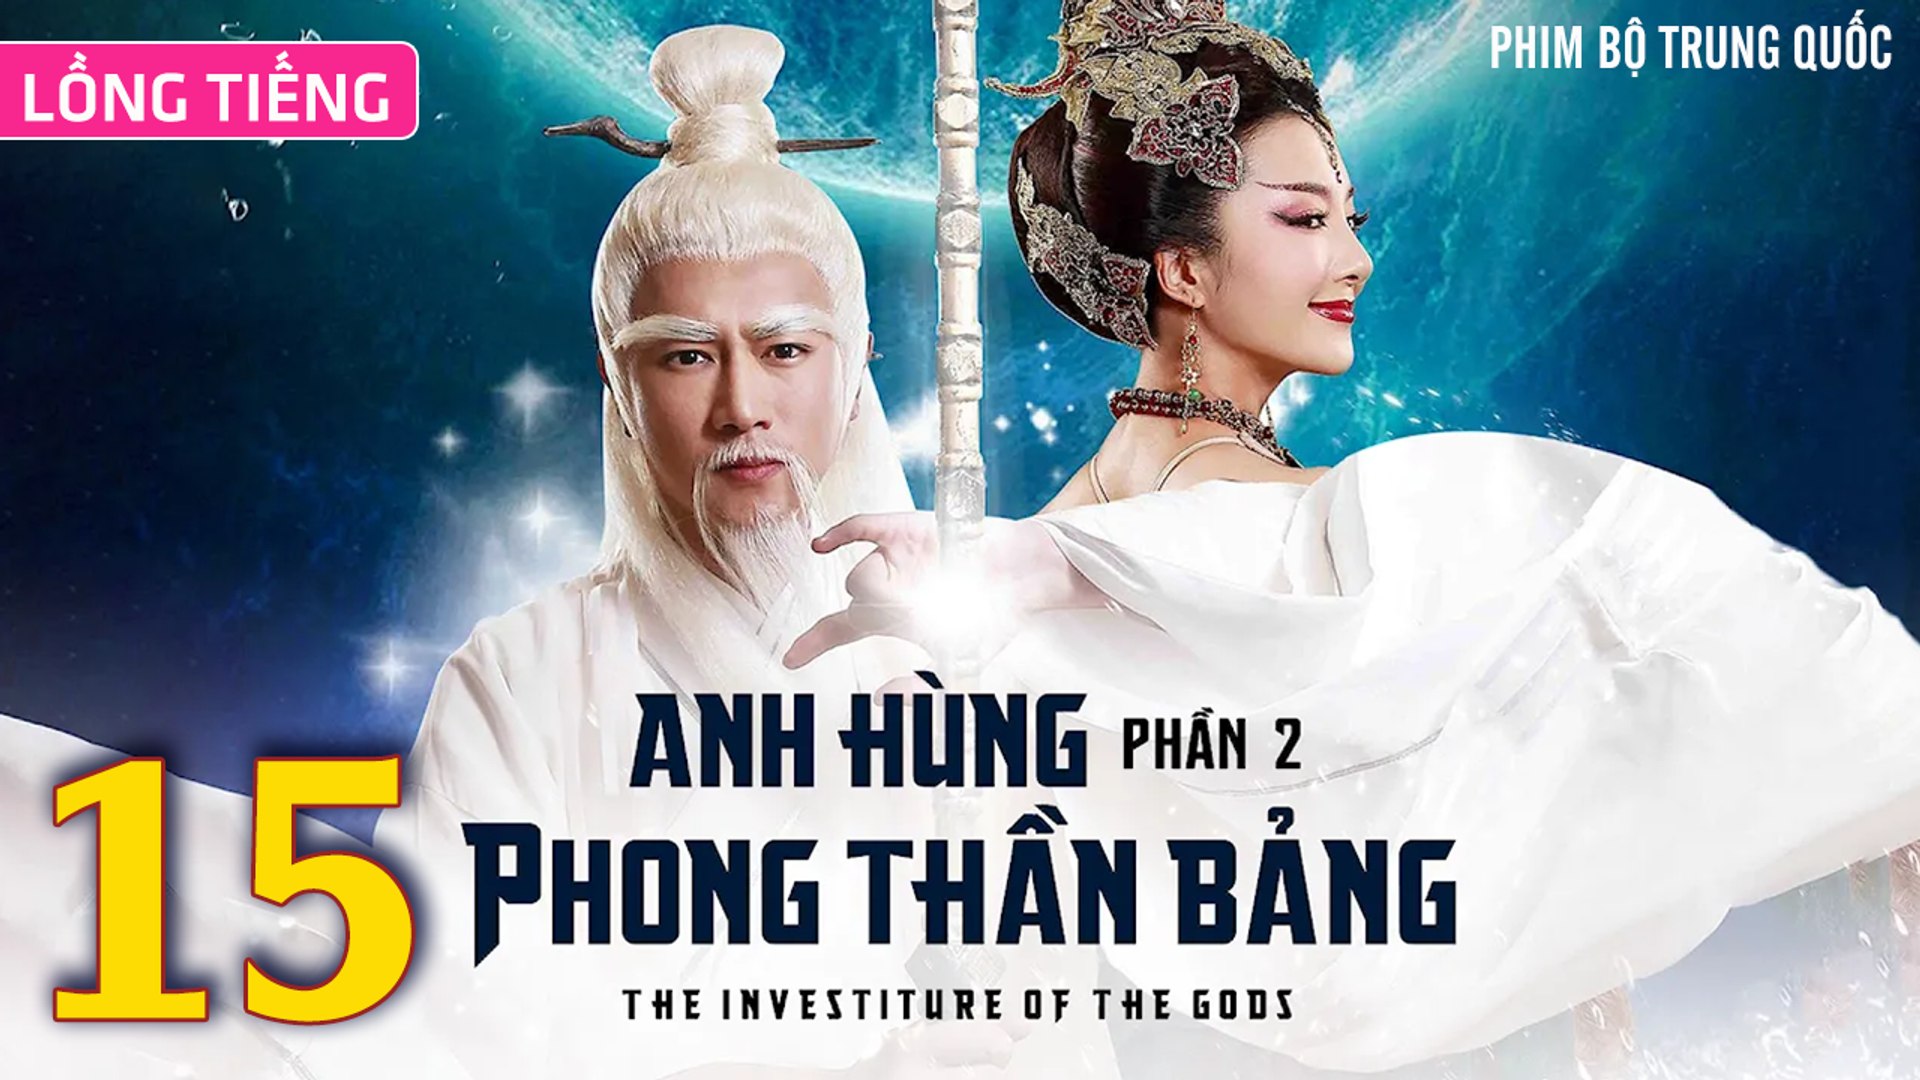 ⁣Phim Bộ Hay: ANH HÙNG PHONG THẦN BẢNG 2 - Tập 15 (Lồng Tiếng) | Phim Bộ Trung Quốc Hay Nhất 2023